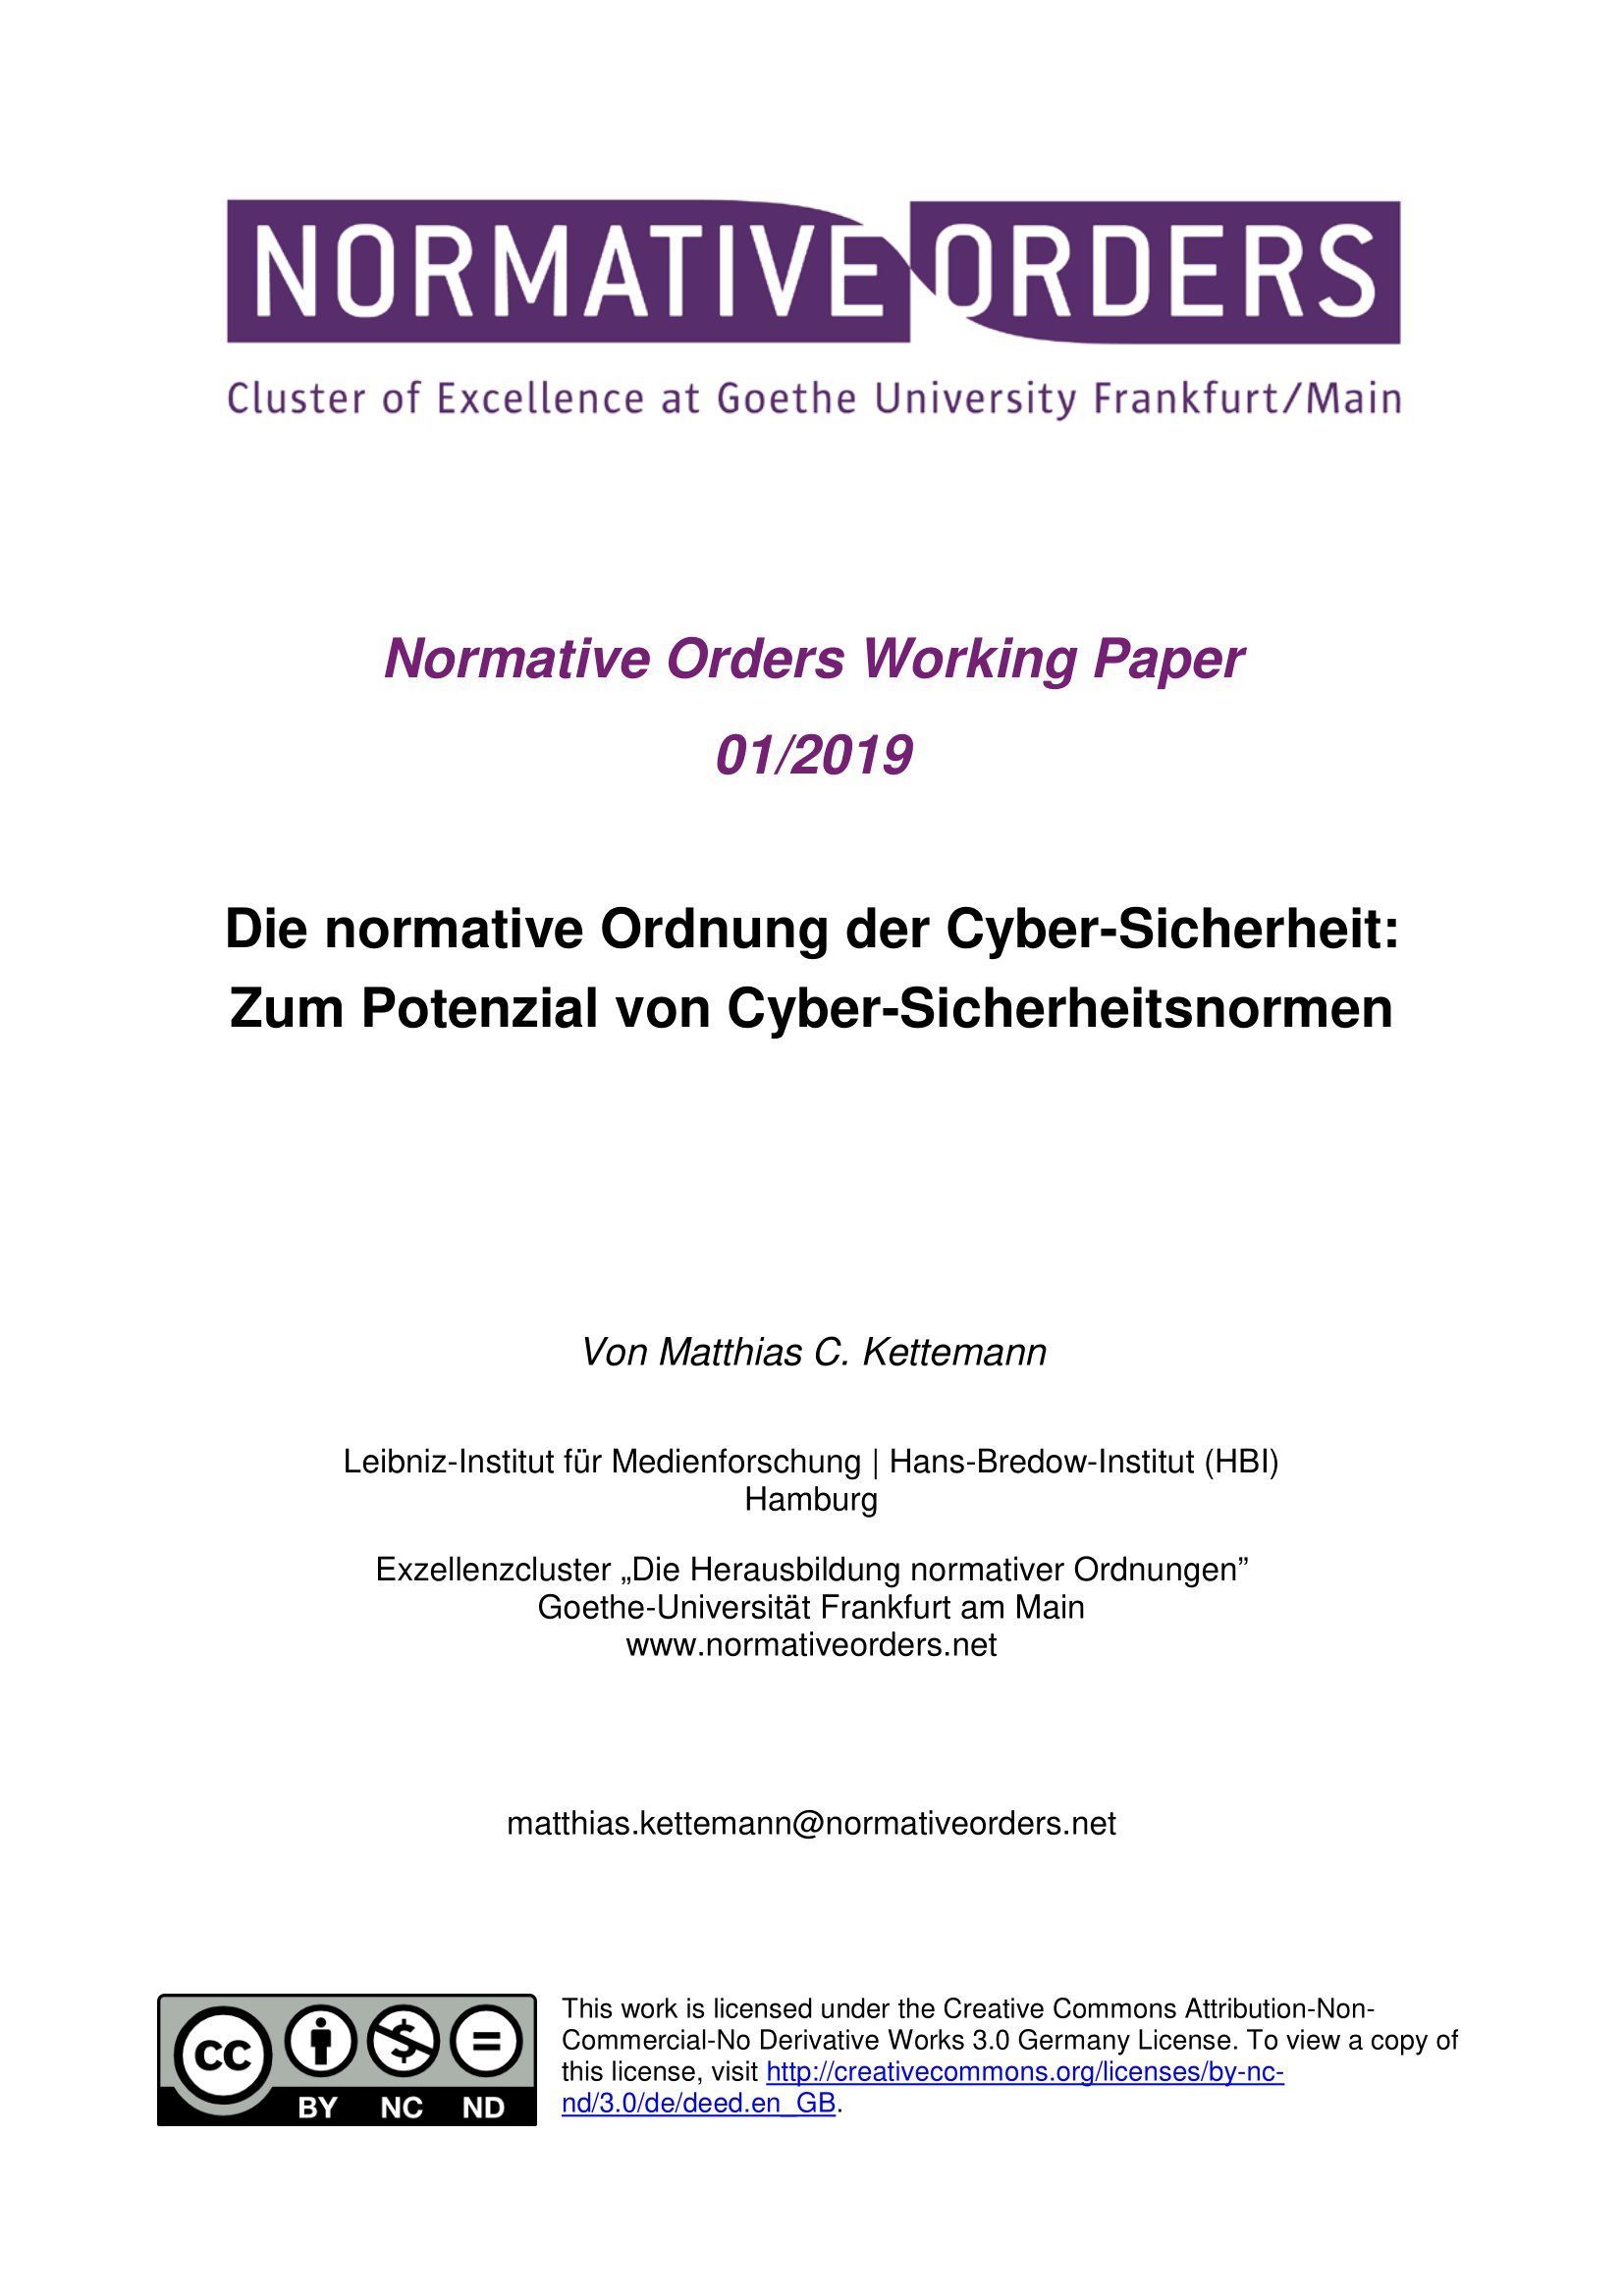 Die normative Ordnung der Cyber-Sicherheit: zum Potenzial von Cyber-Sicherheitsnormen